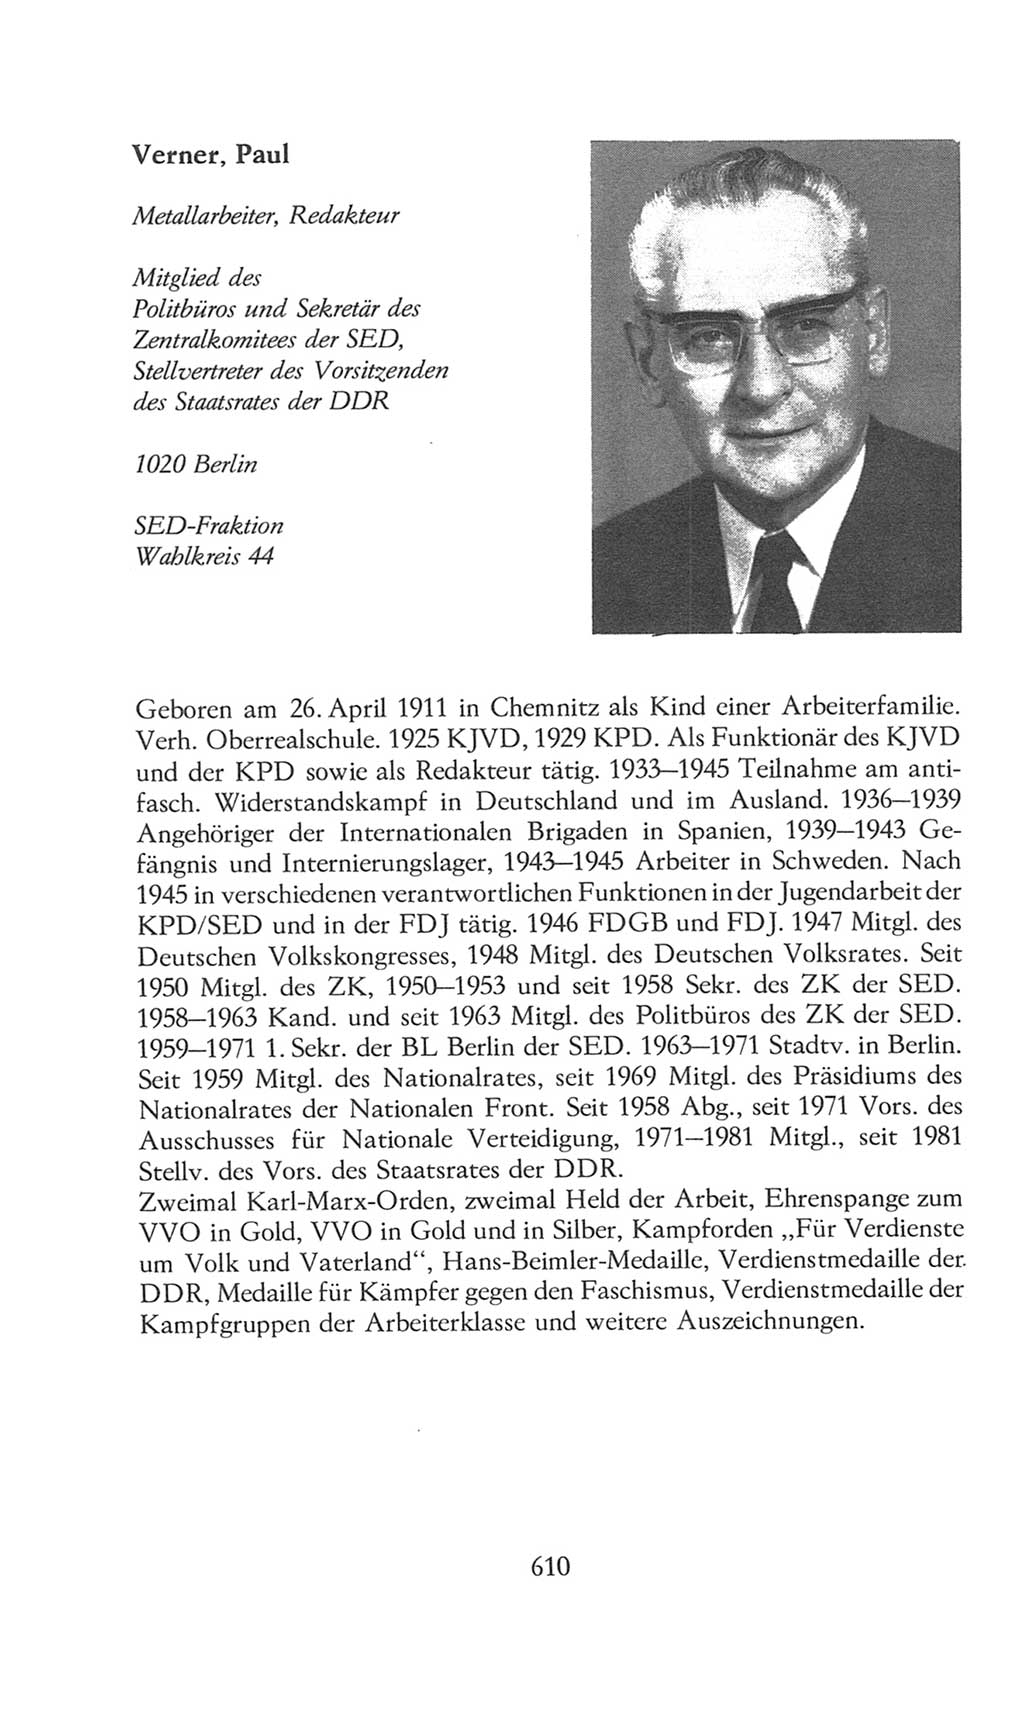 Volkskammer (VK) der Deutschen Demokratischen Republik (DDR), 8. Wahlperiode 1981-1986, Seite 610 (VK. DDR 8. WP. 1981-1986, S. 610)